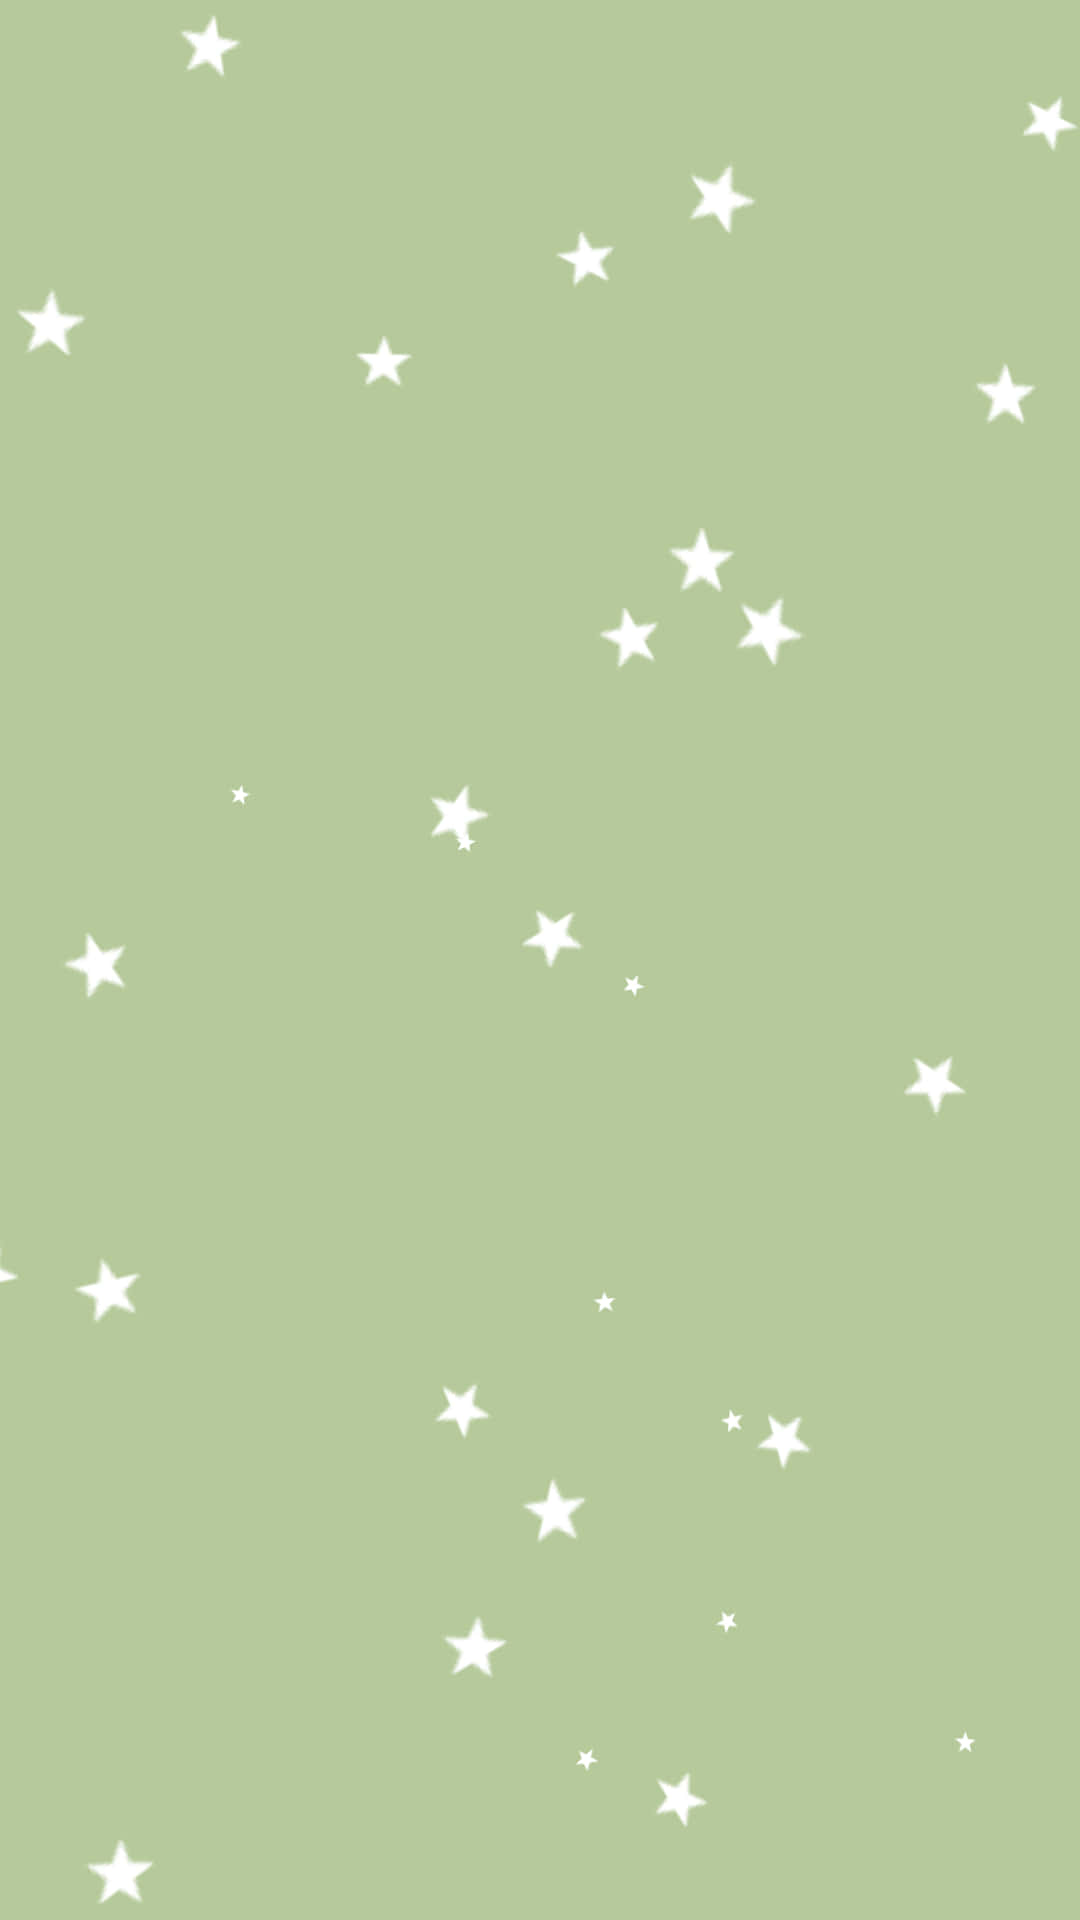 Kleineweiße Sterne, Salbei-ästhetik. Wallpaper